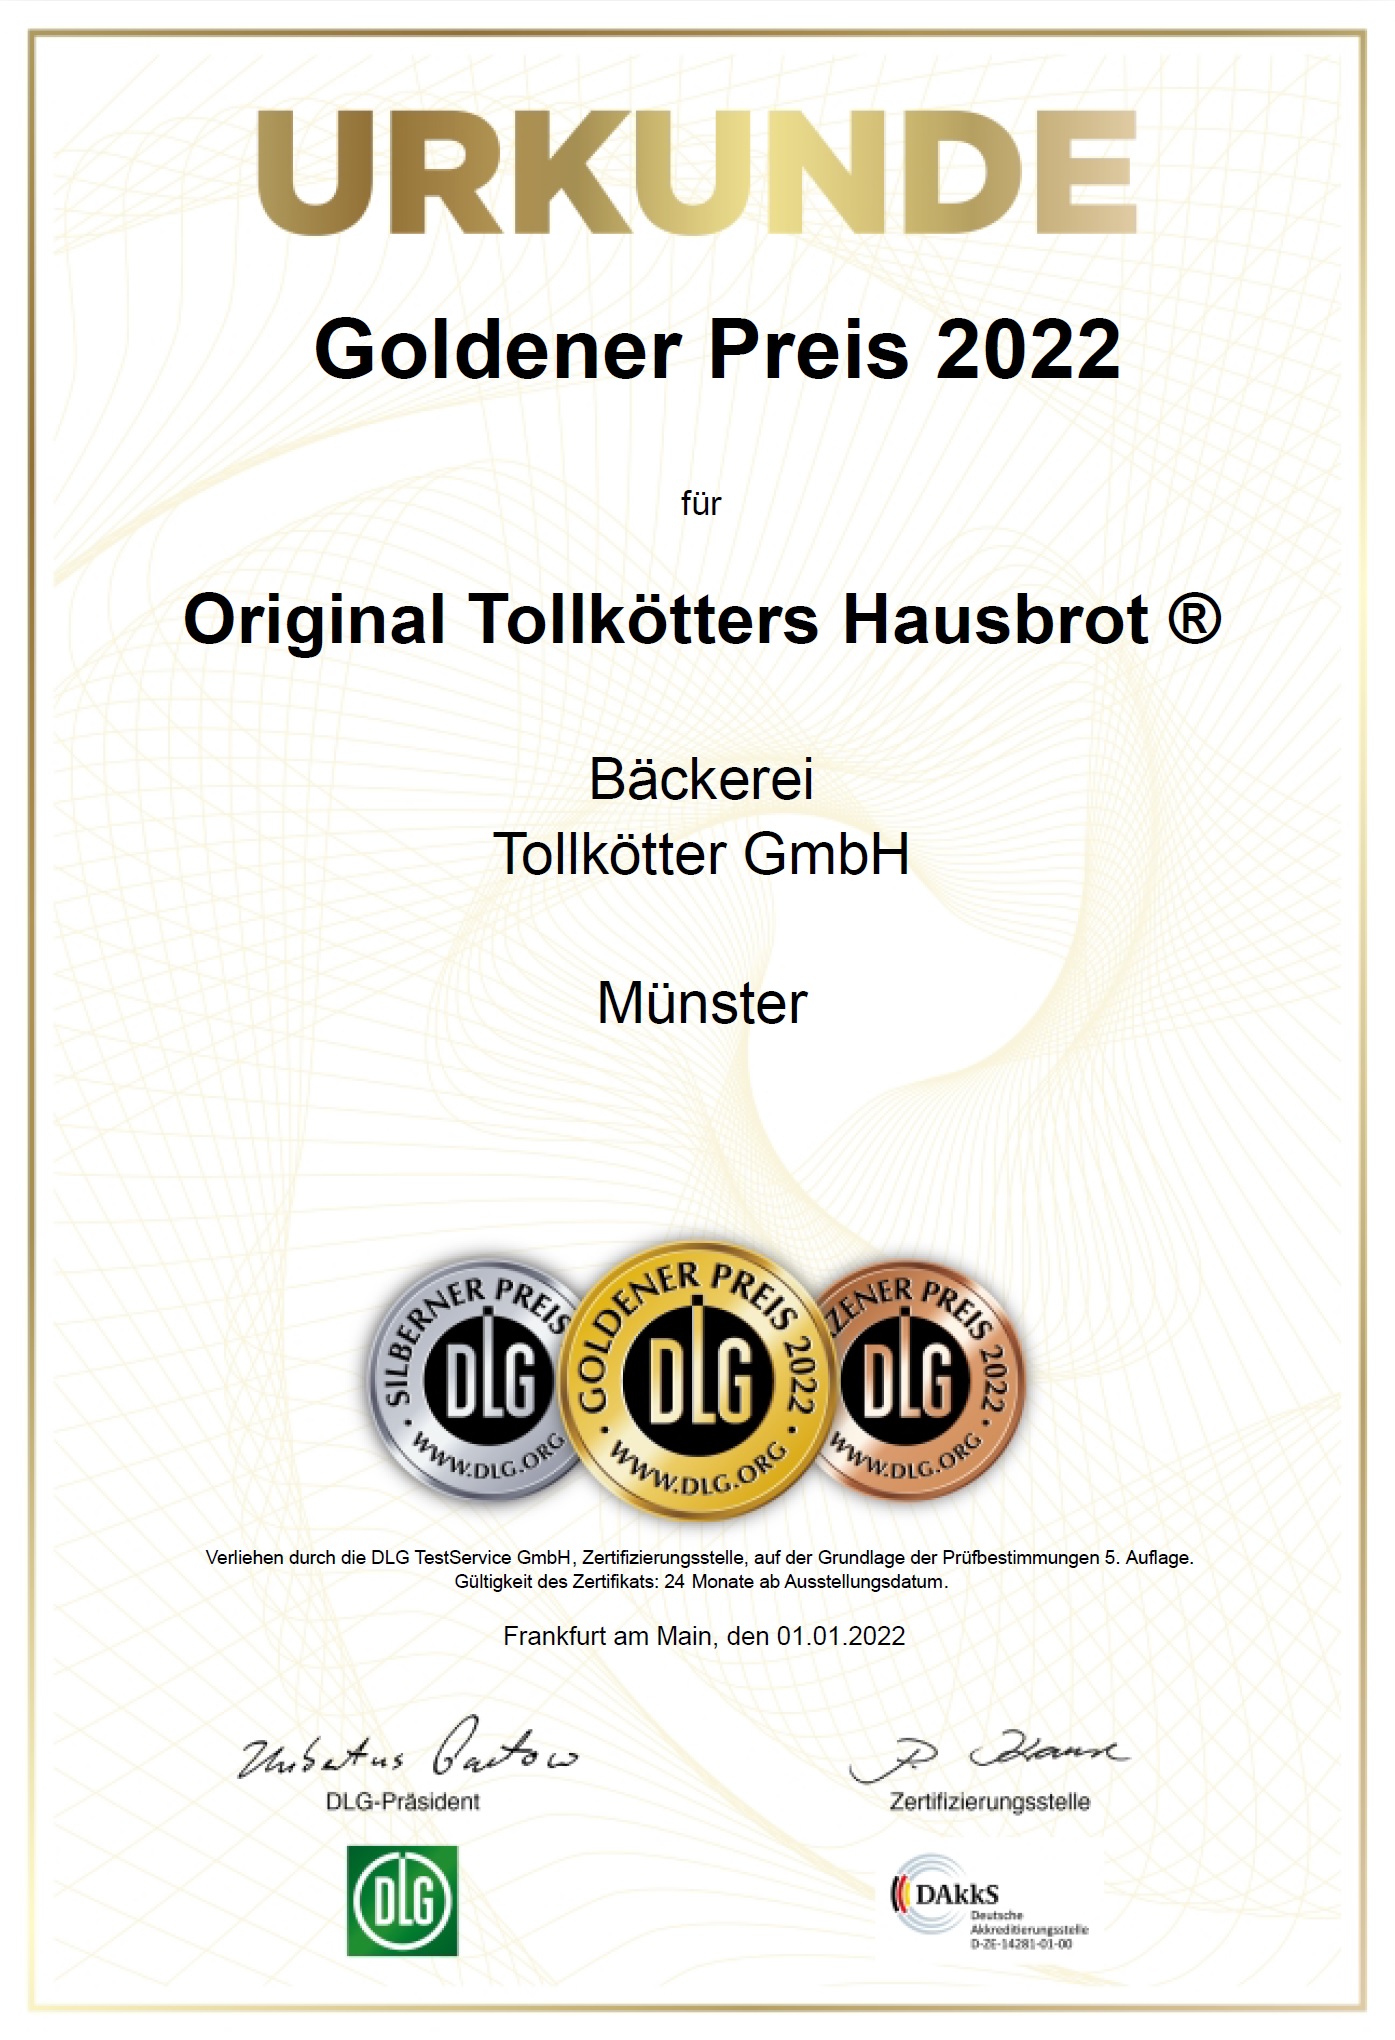 101819_1493_Original_Tollkötters_Hausbrot_®